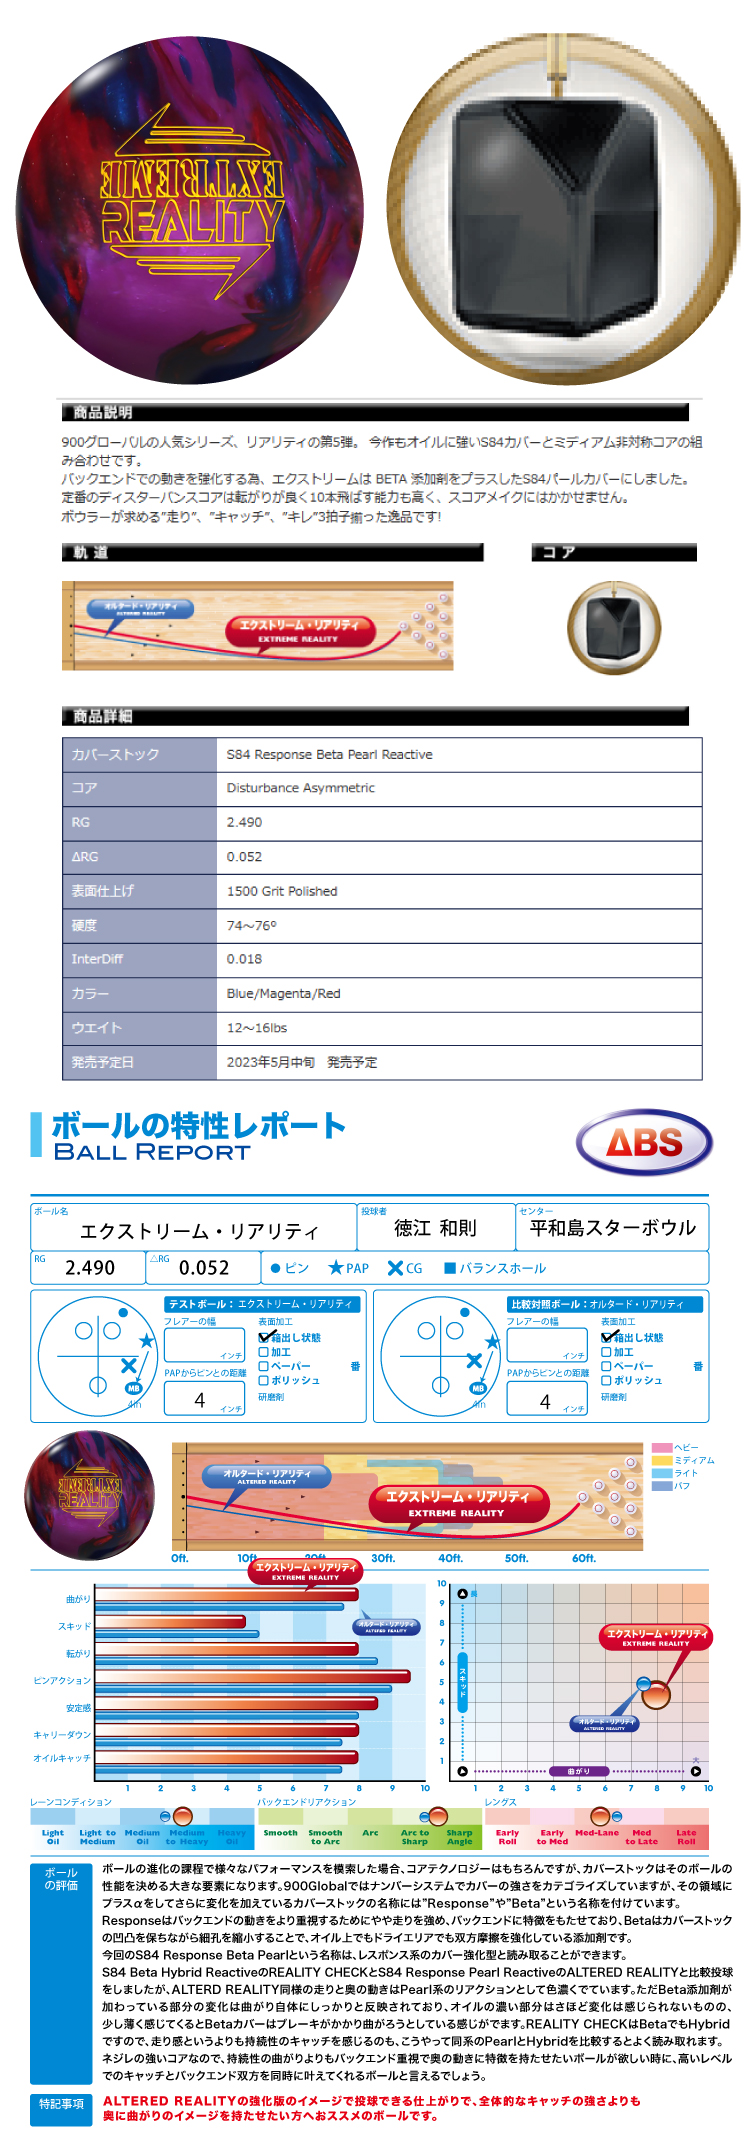 ボウリングボール ABS 900グローバル 900GLOBAL】エクストリームリアリティ EXTREME REALITY ボール  フタバプロショップオンライン